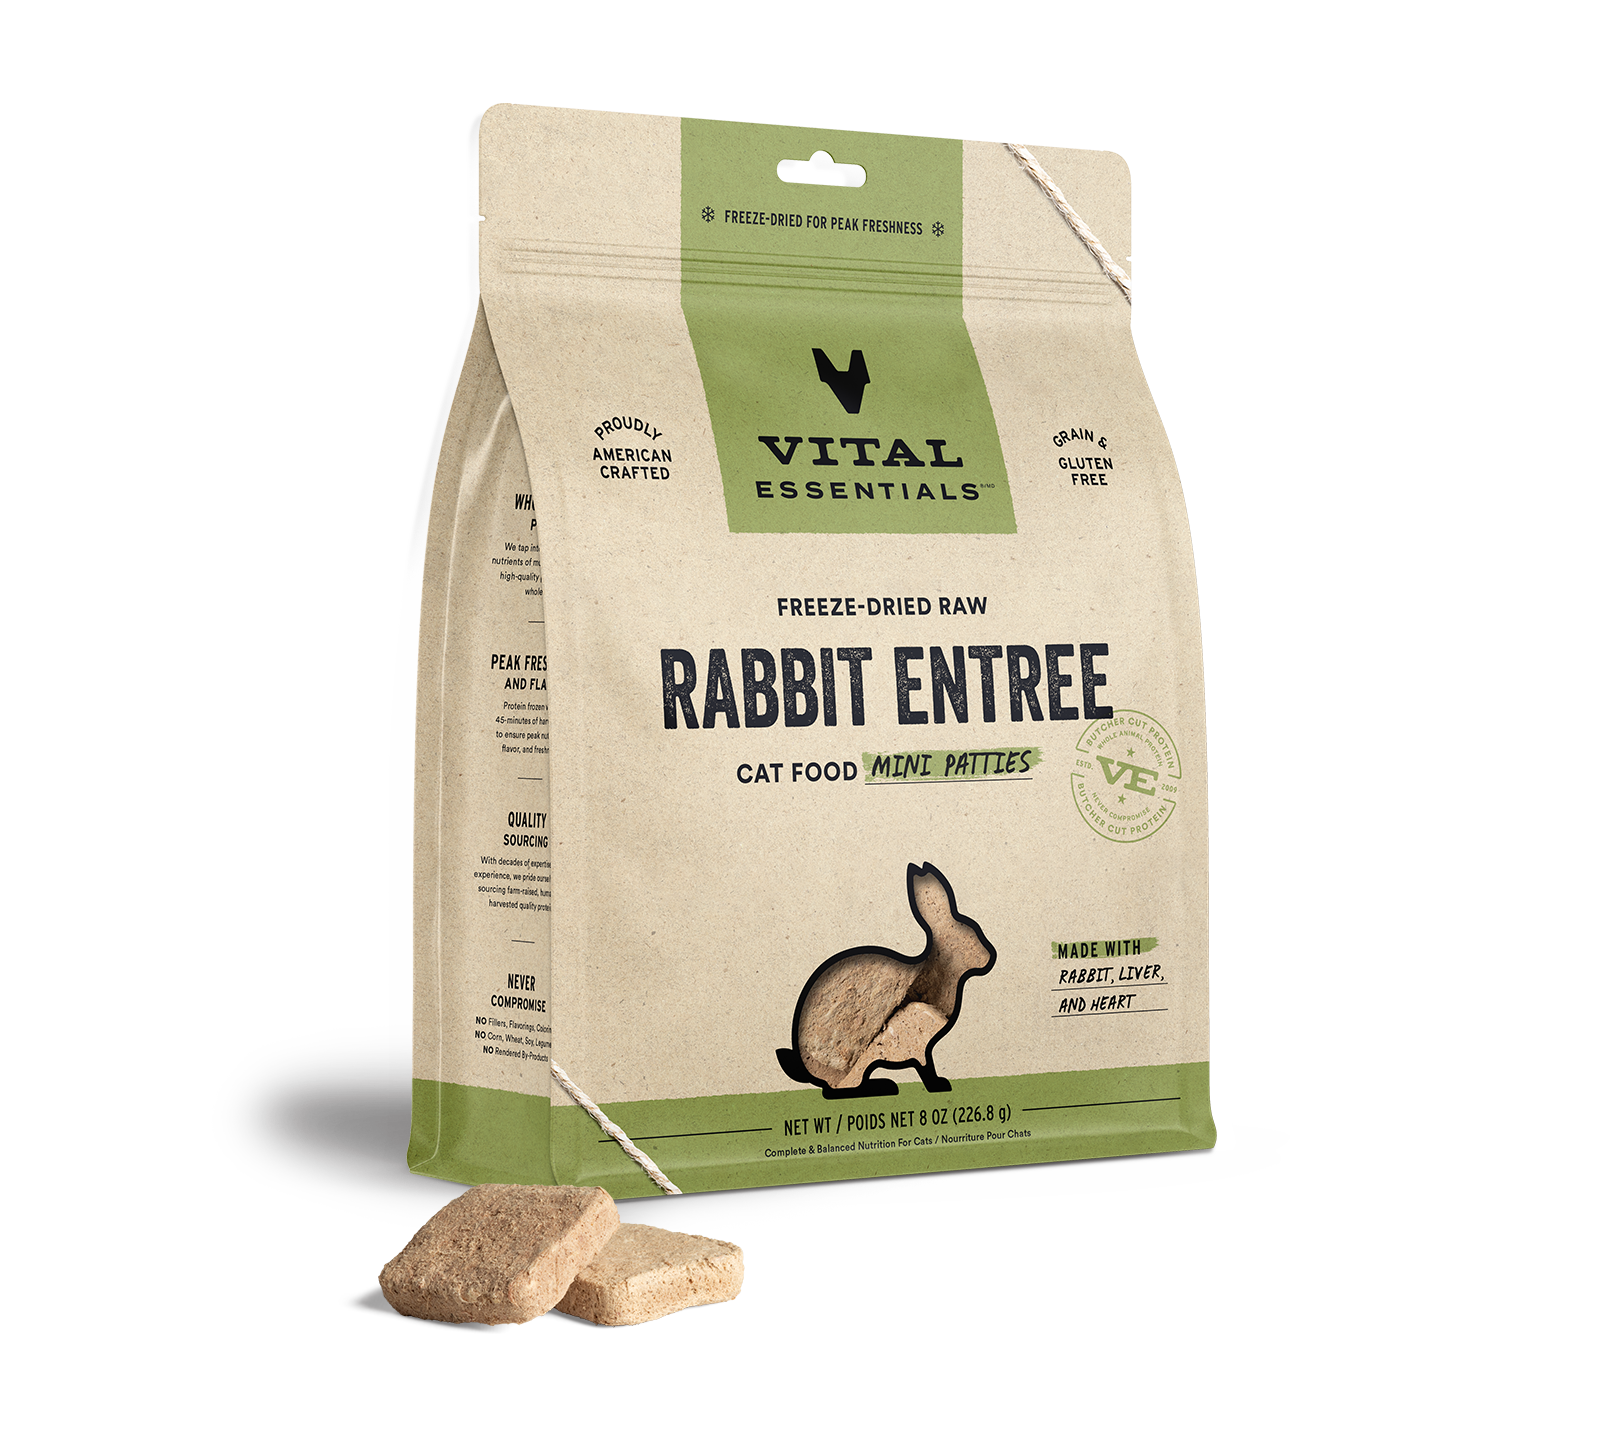 Vital Essentials Freeze-Dried Raw Rabbit Entree Cat Food Mini Patties, 8 oz - Health/First Aid